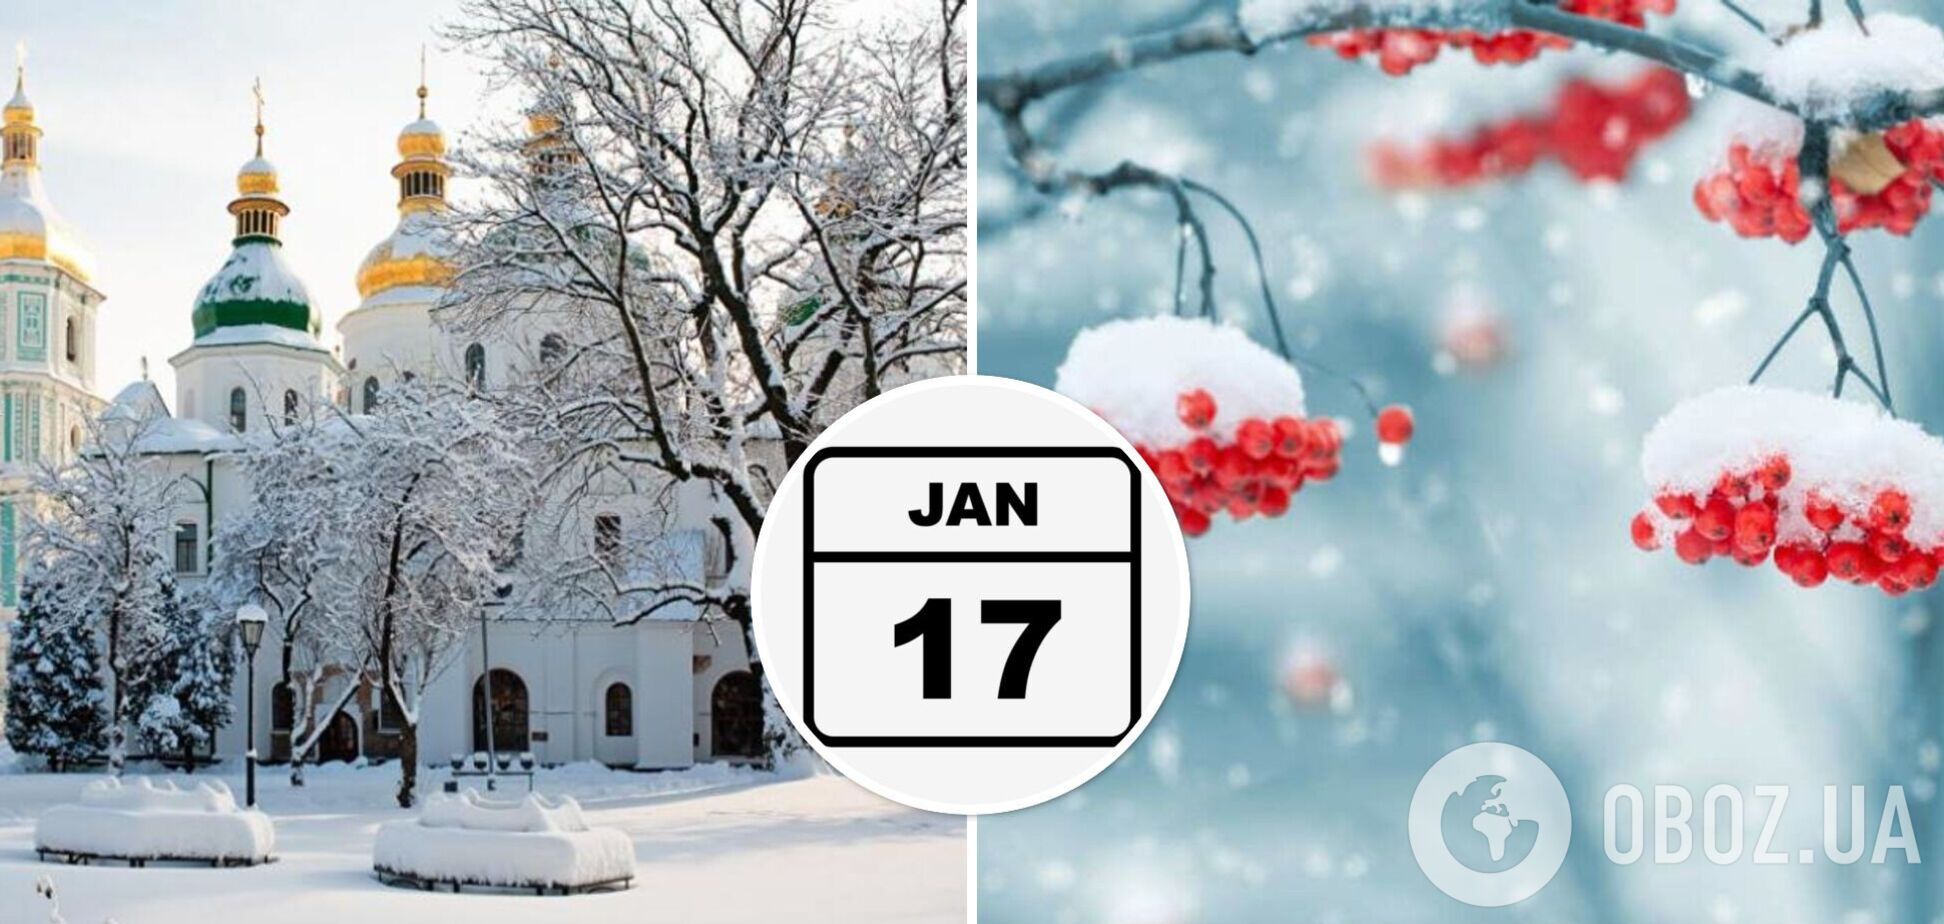 Какой праздник выпадает на 17 января: кто празднует именины в этот день